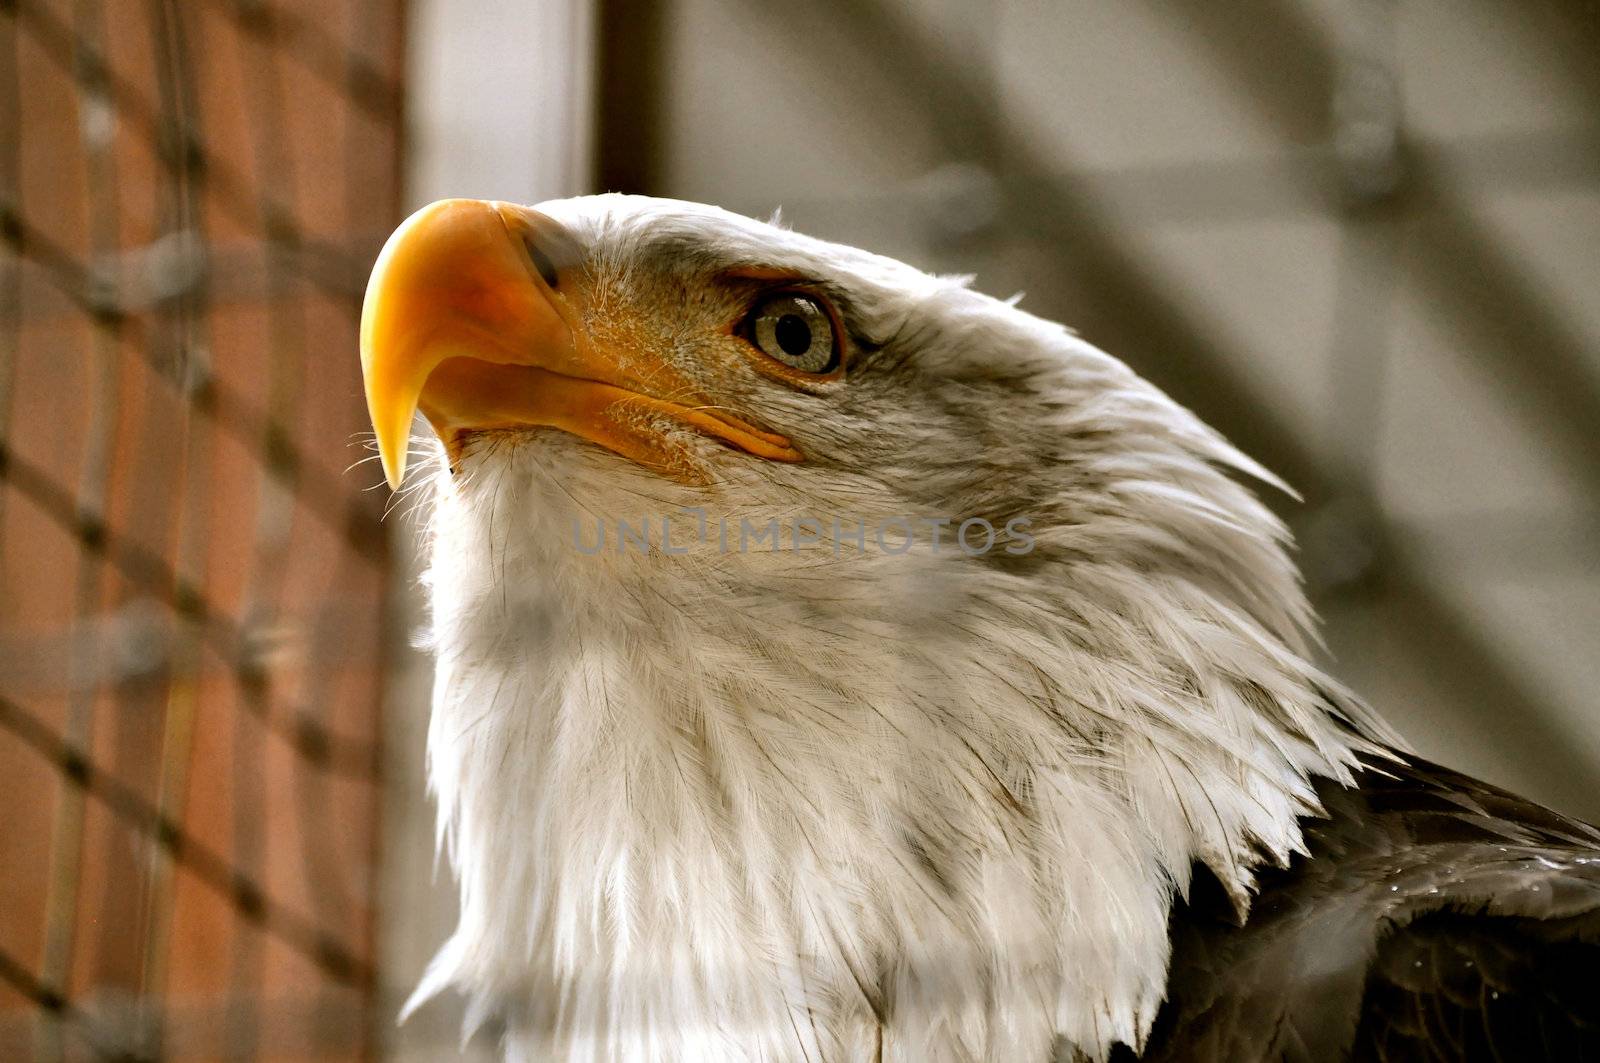 Bald Eagle in Rehabilitation Center